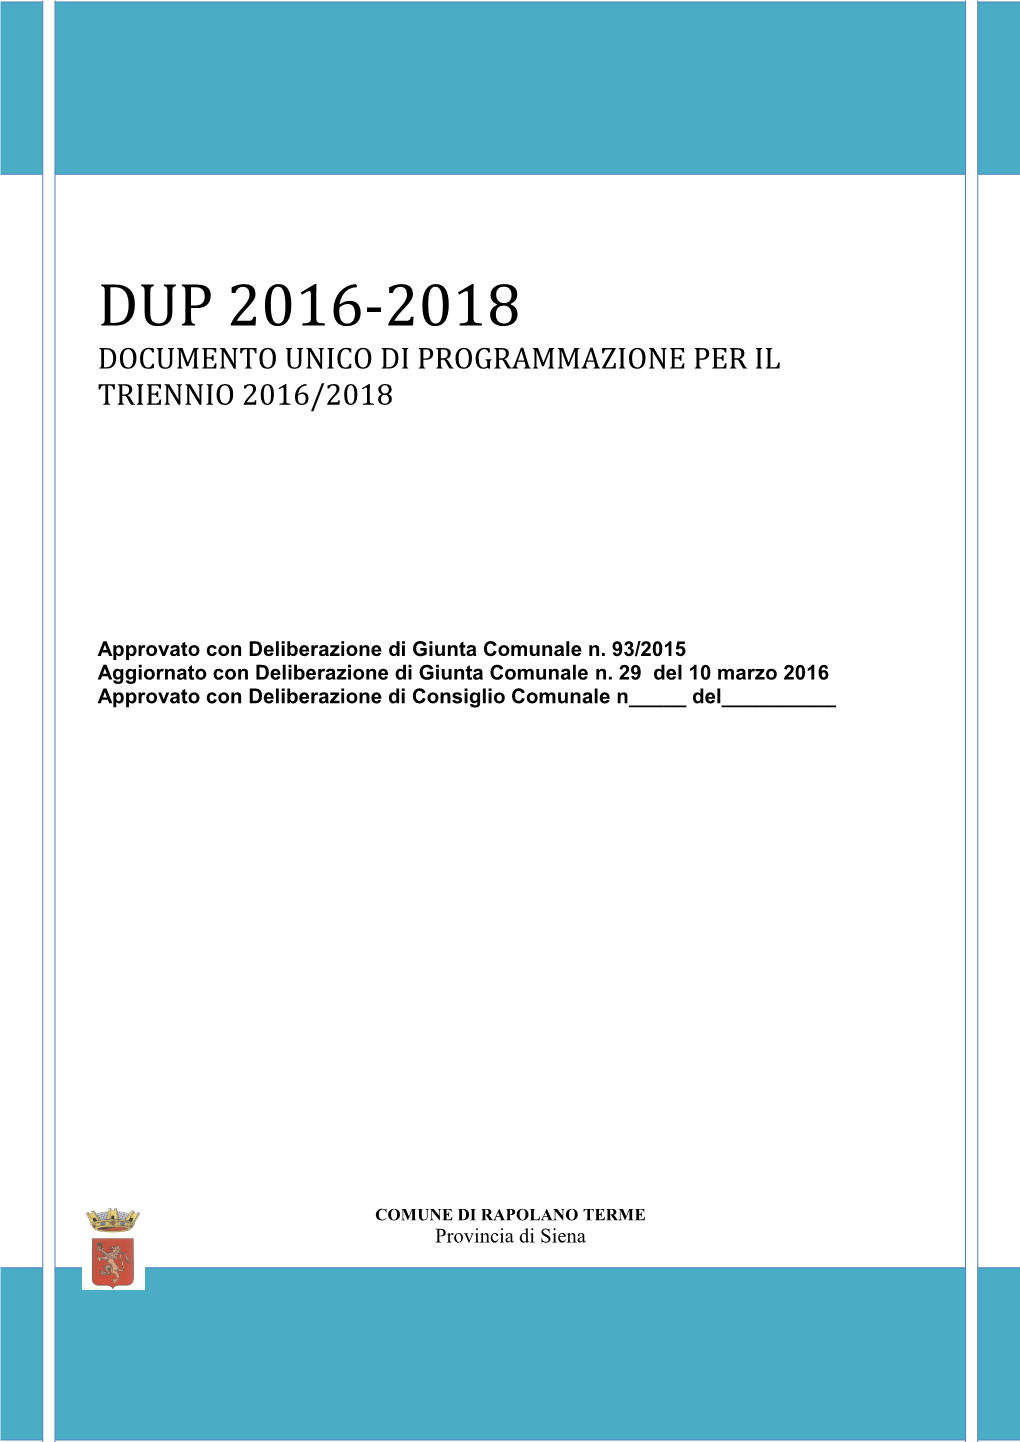 Dup 2016-2018 Documento Unico Di Programmazione Per Il Triennio 2016/2018